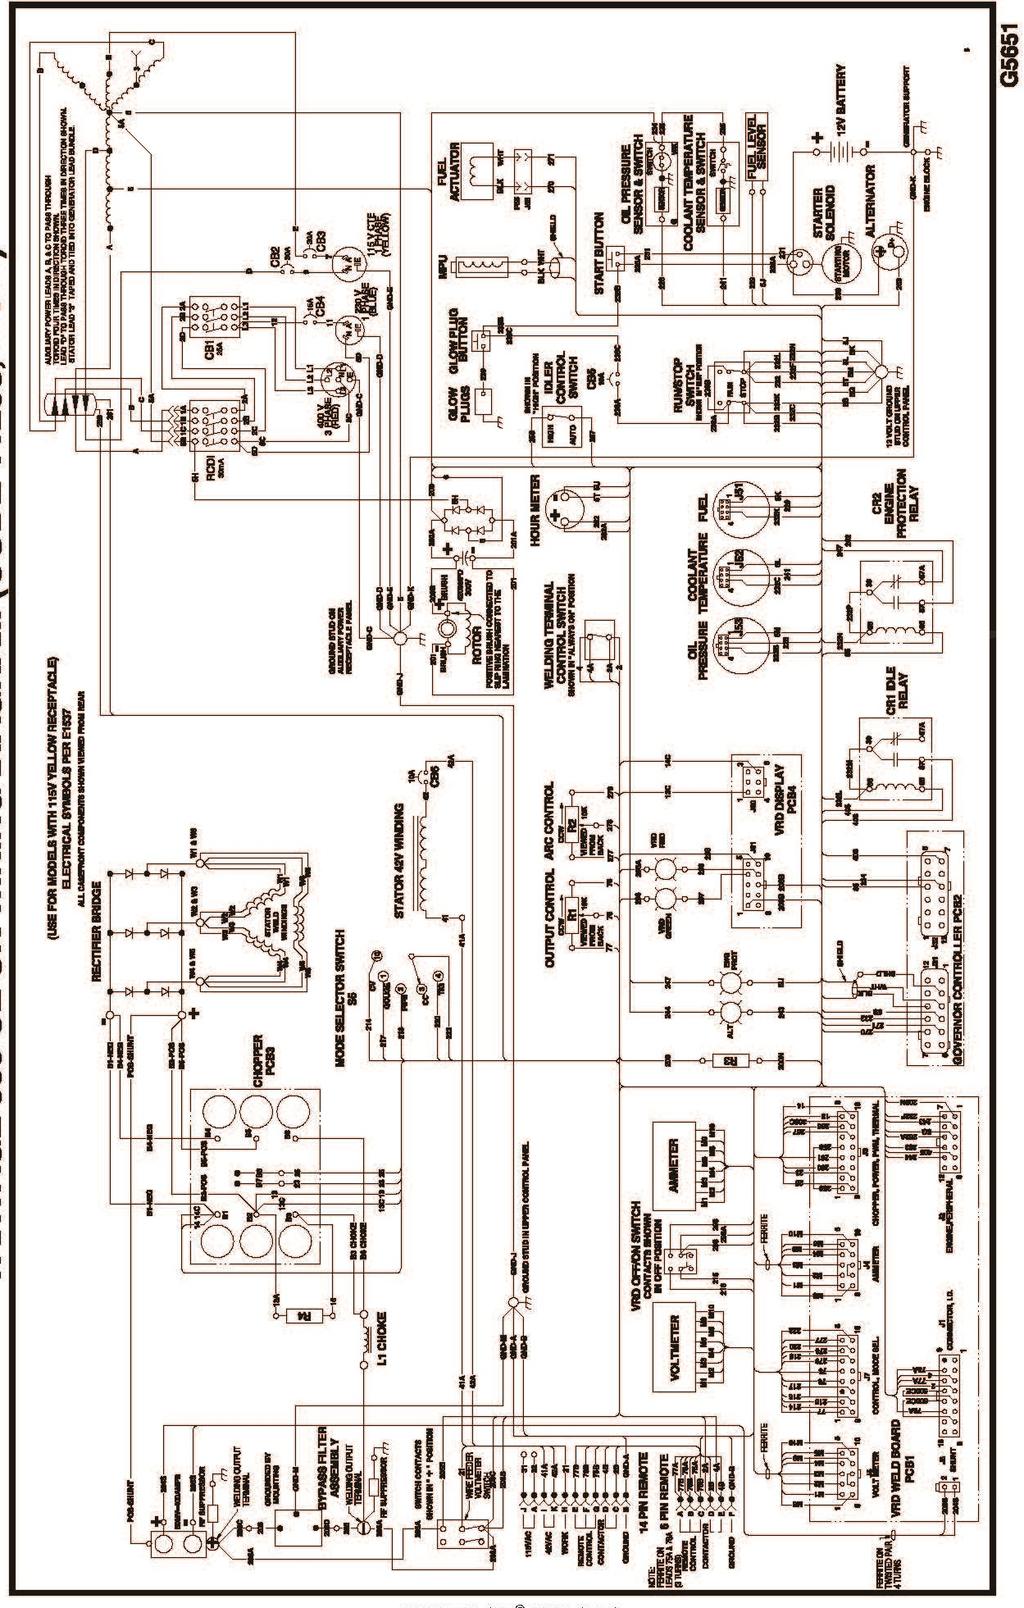 Sähkökaavio VANTAGE 500 CE UK (CODE 11298, 11524) HUOMAA: Nämä kaaviot ovat vain viitteellisiä. Kaavio ei saata kuvata tarkasti kaikkia tämän käsikirjan kattamia koneita.